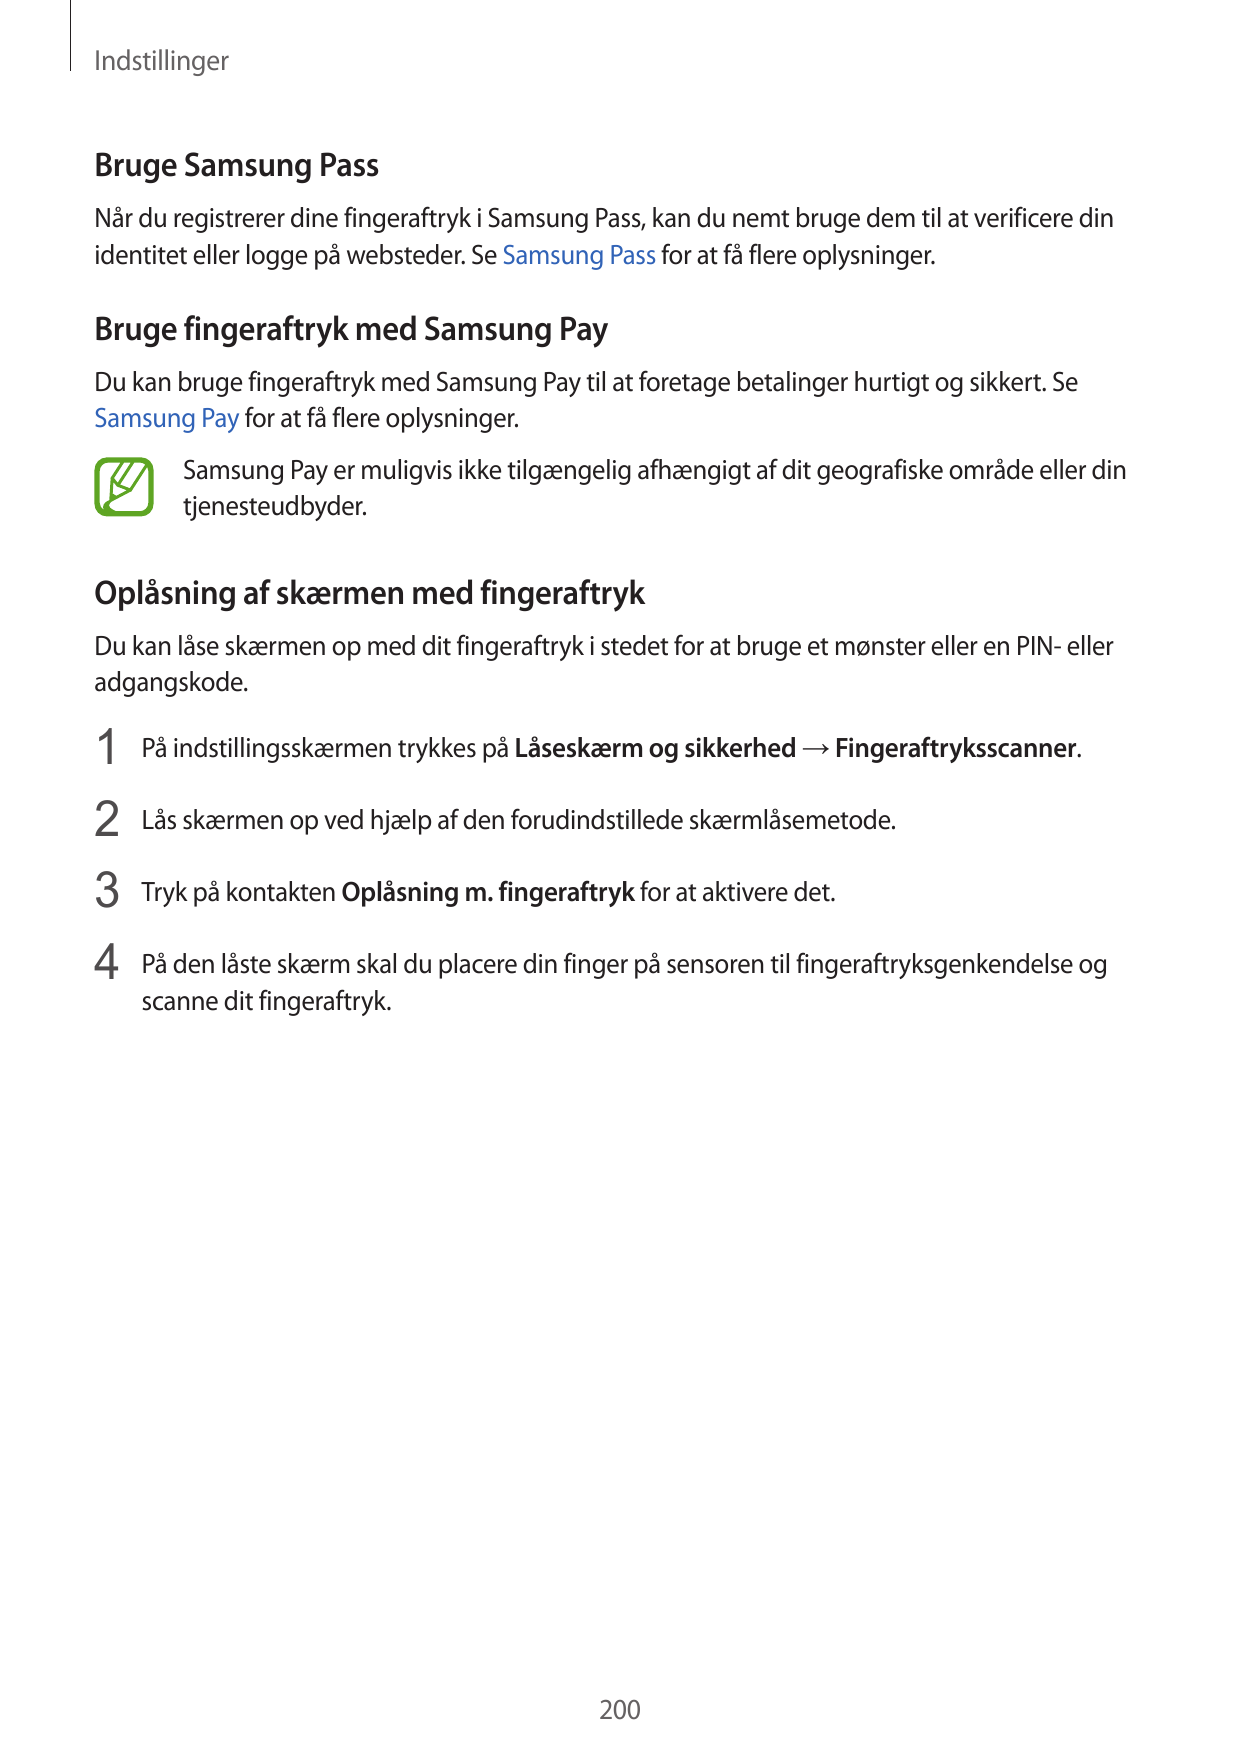 IndstillingerBruge Samsung PassNår du registrerer dine fingeraftryk i Samsung Pass, kan du nemt bruge dem til at verificere dini